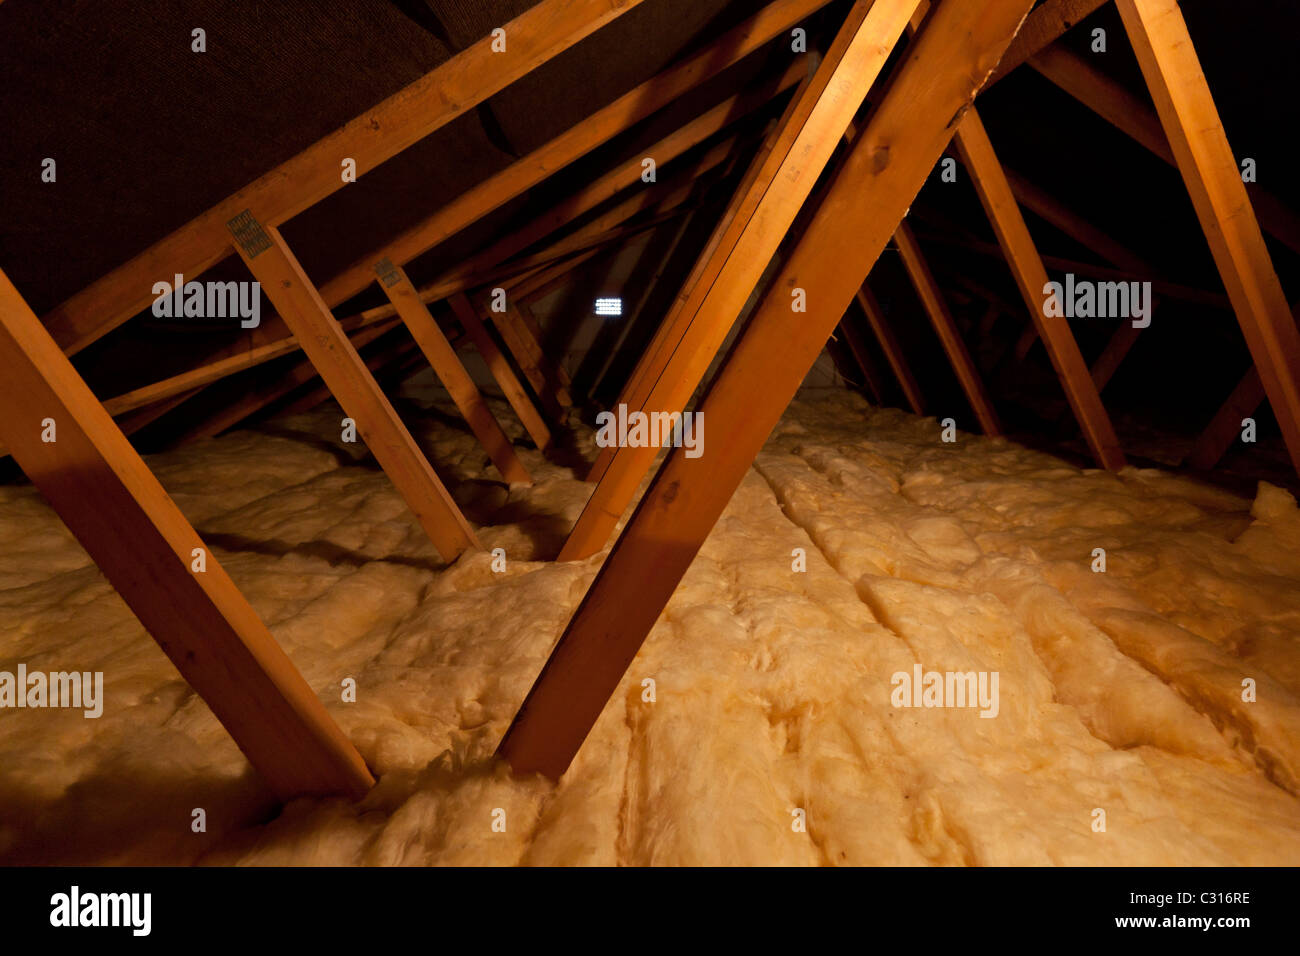 À l'intérieur d'un loft de maison mettant une isolation supplémentaire pour augmenter la chaleur et l'efficacité thermique en ajoutant une isolation supplémentaire de loft Banque D'Images